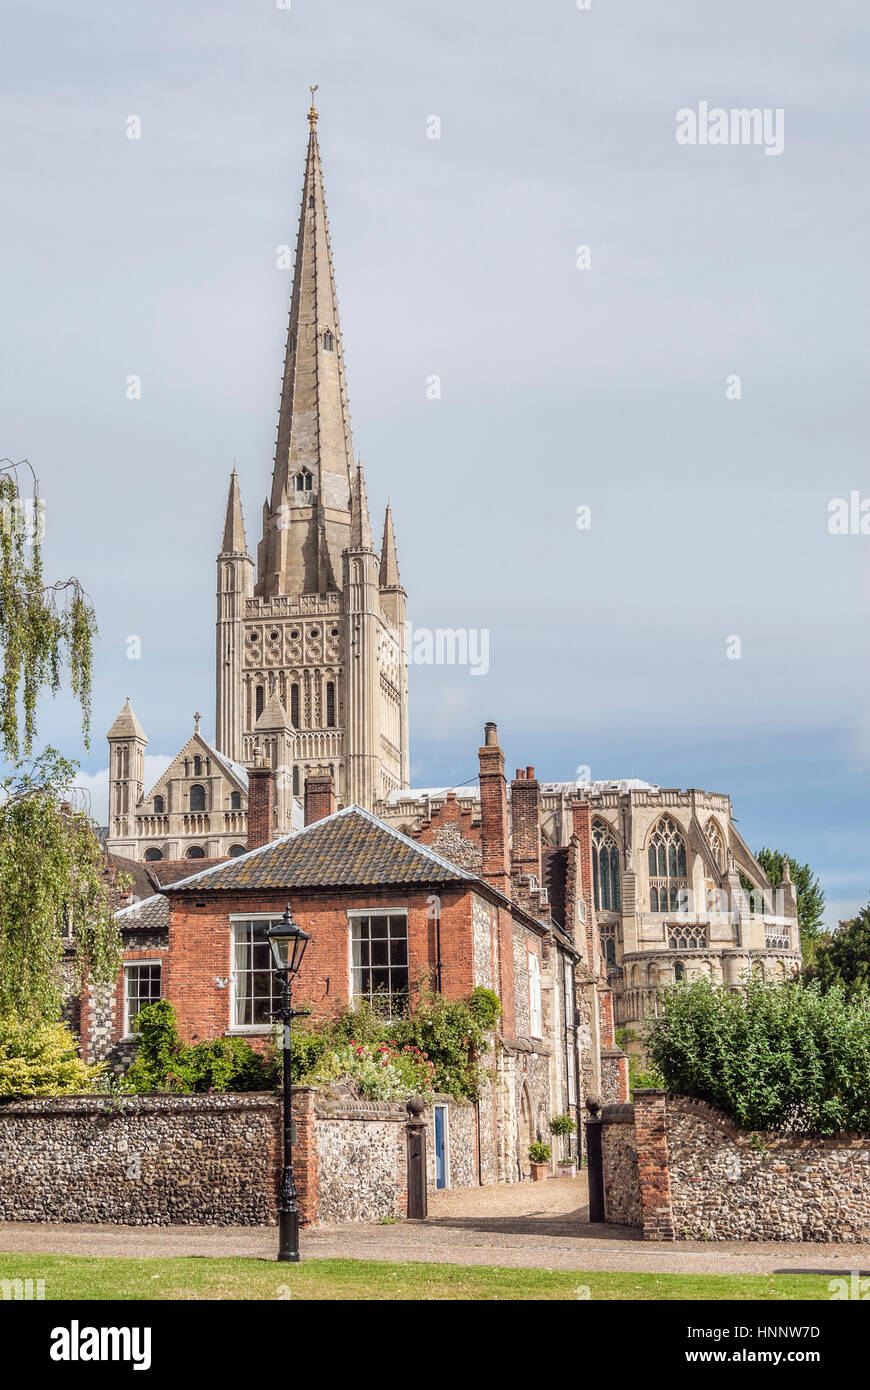 La Cattedrale di Norwich è una cattedrale della Chiesa d'Inghilterra a Norwich, Norfolk, Inghilterra, dedicata alla Trinità Santa e indivisa Foto Stock